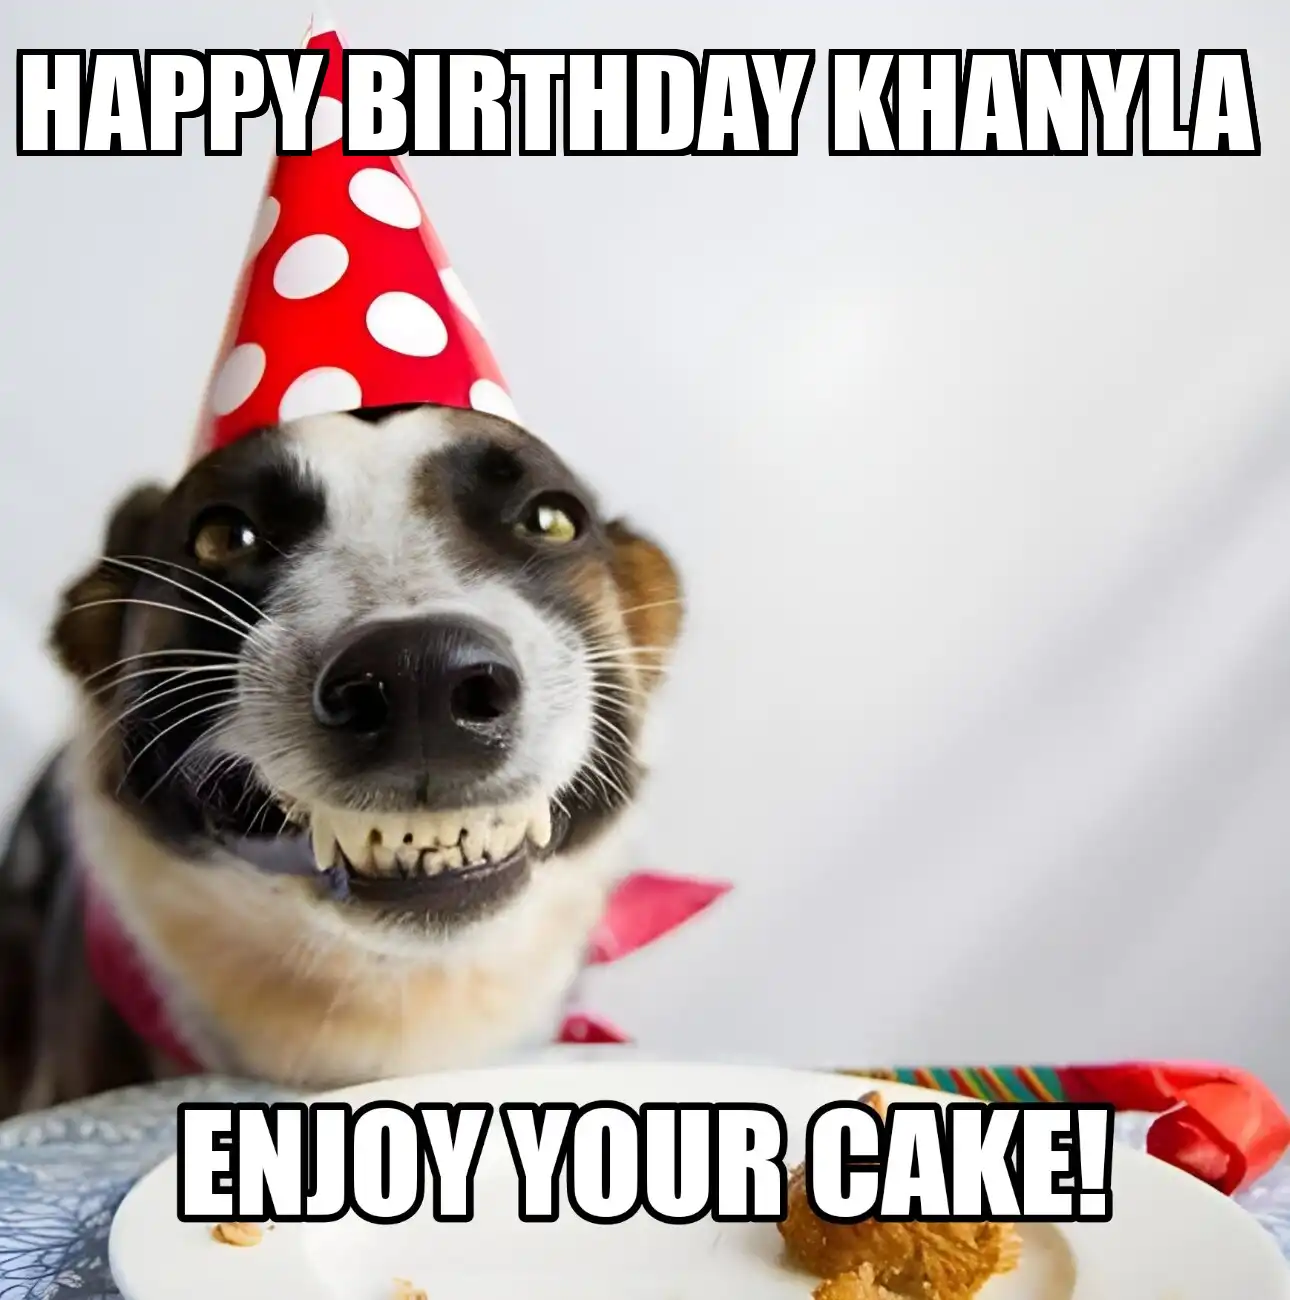 Happy Birthday Khanyla Enjoy Your Cake Dog Meme